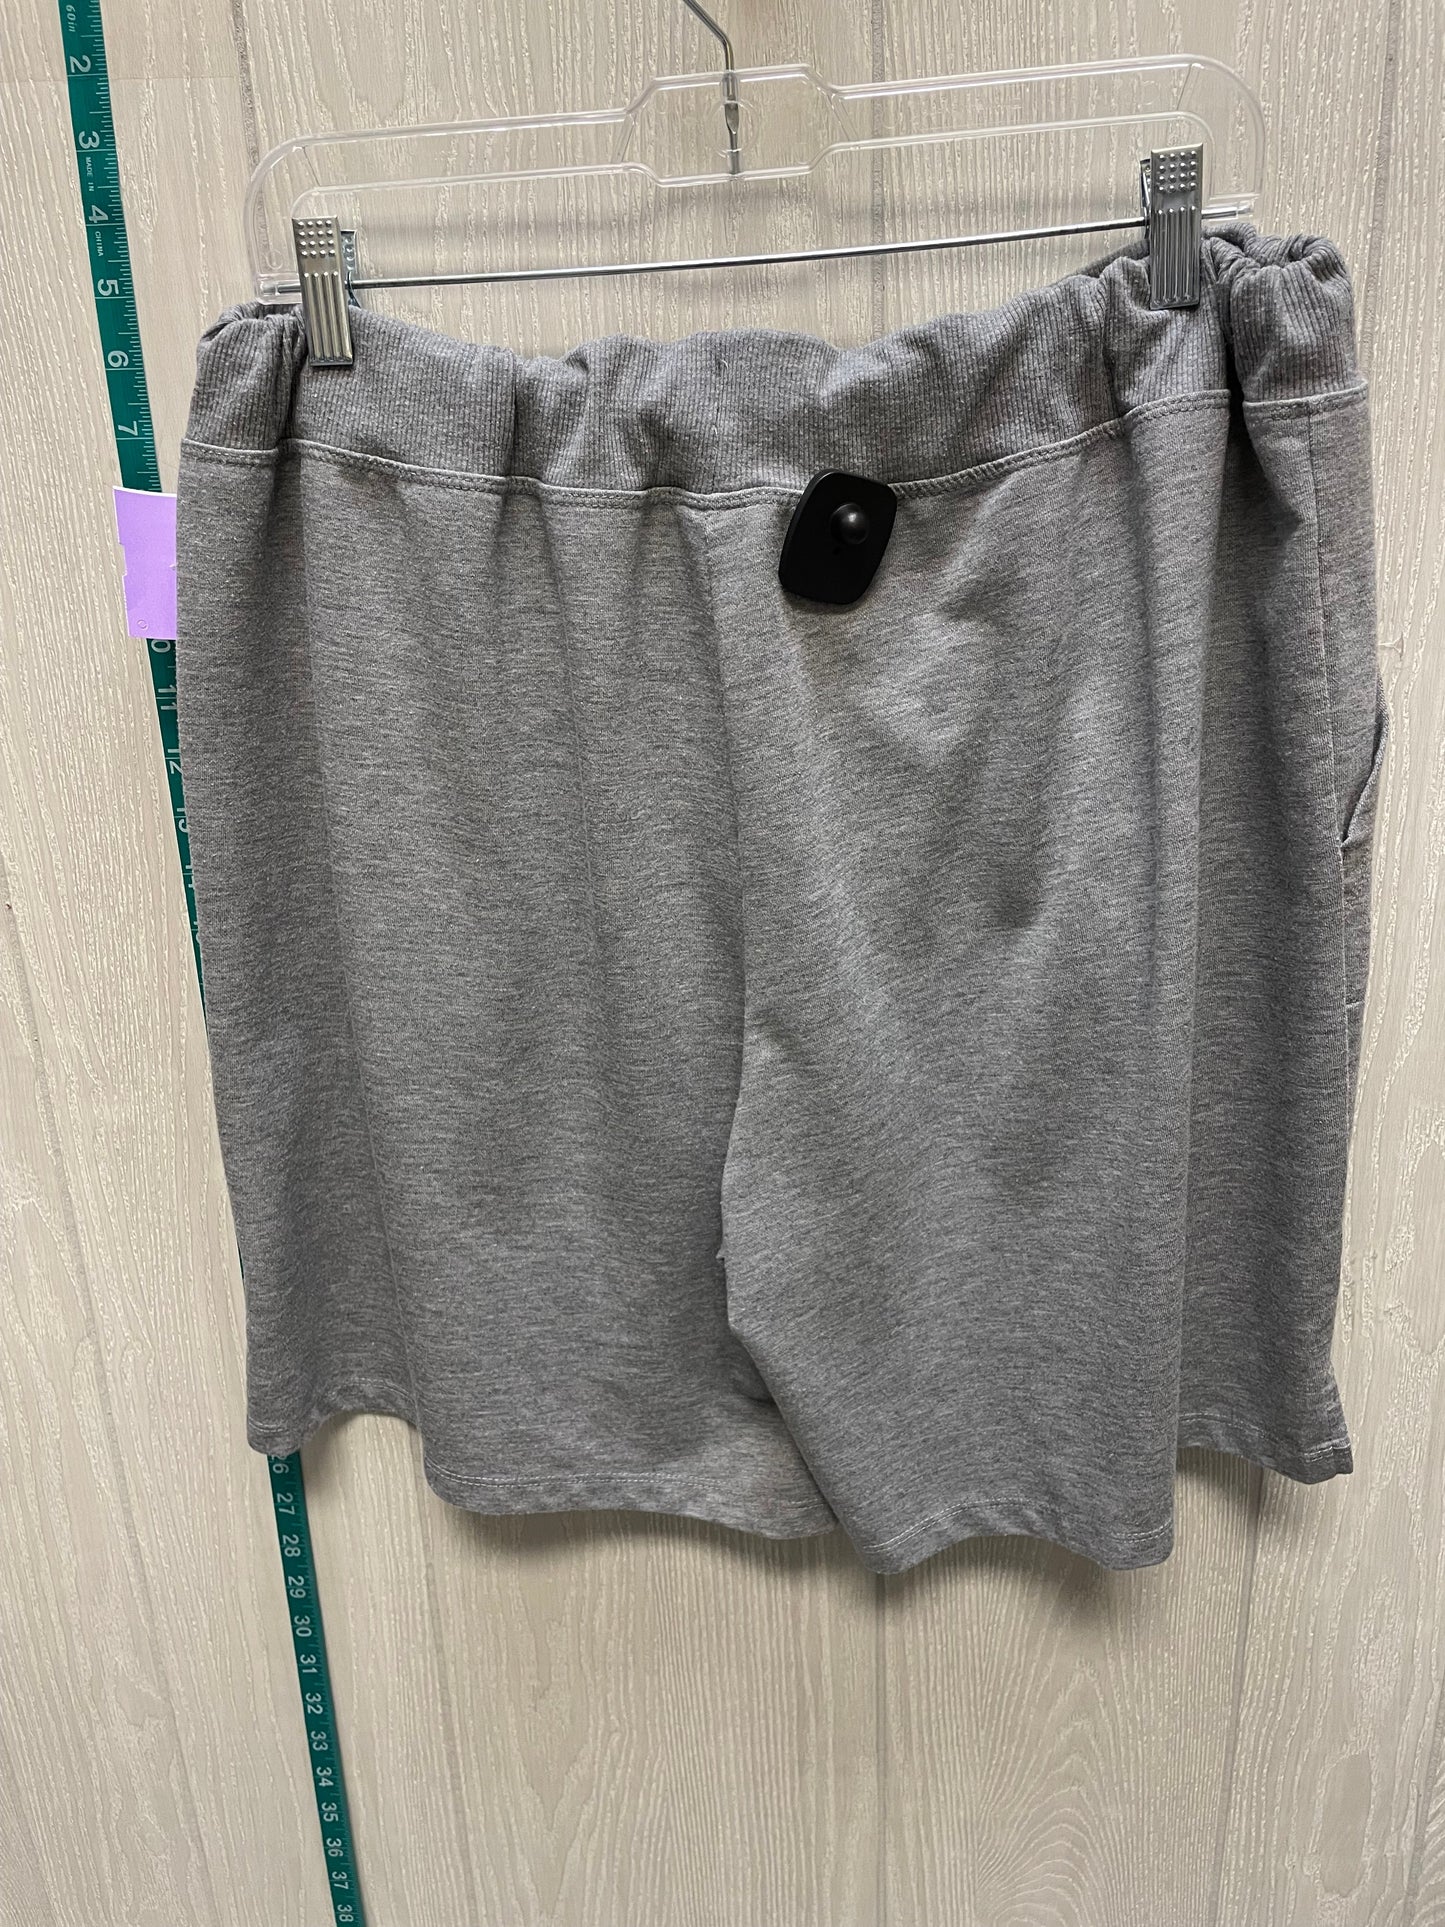 Grey Shorts Athletic Works, Size 20